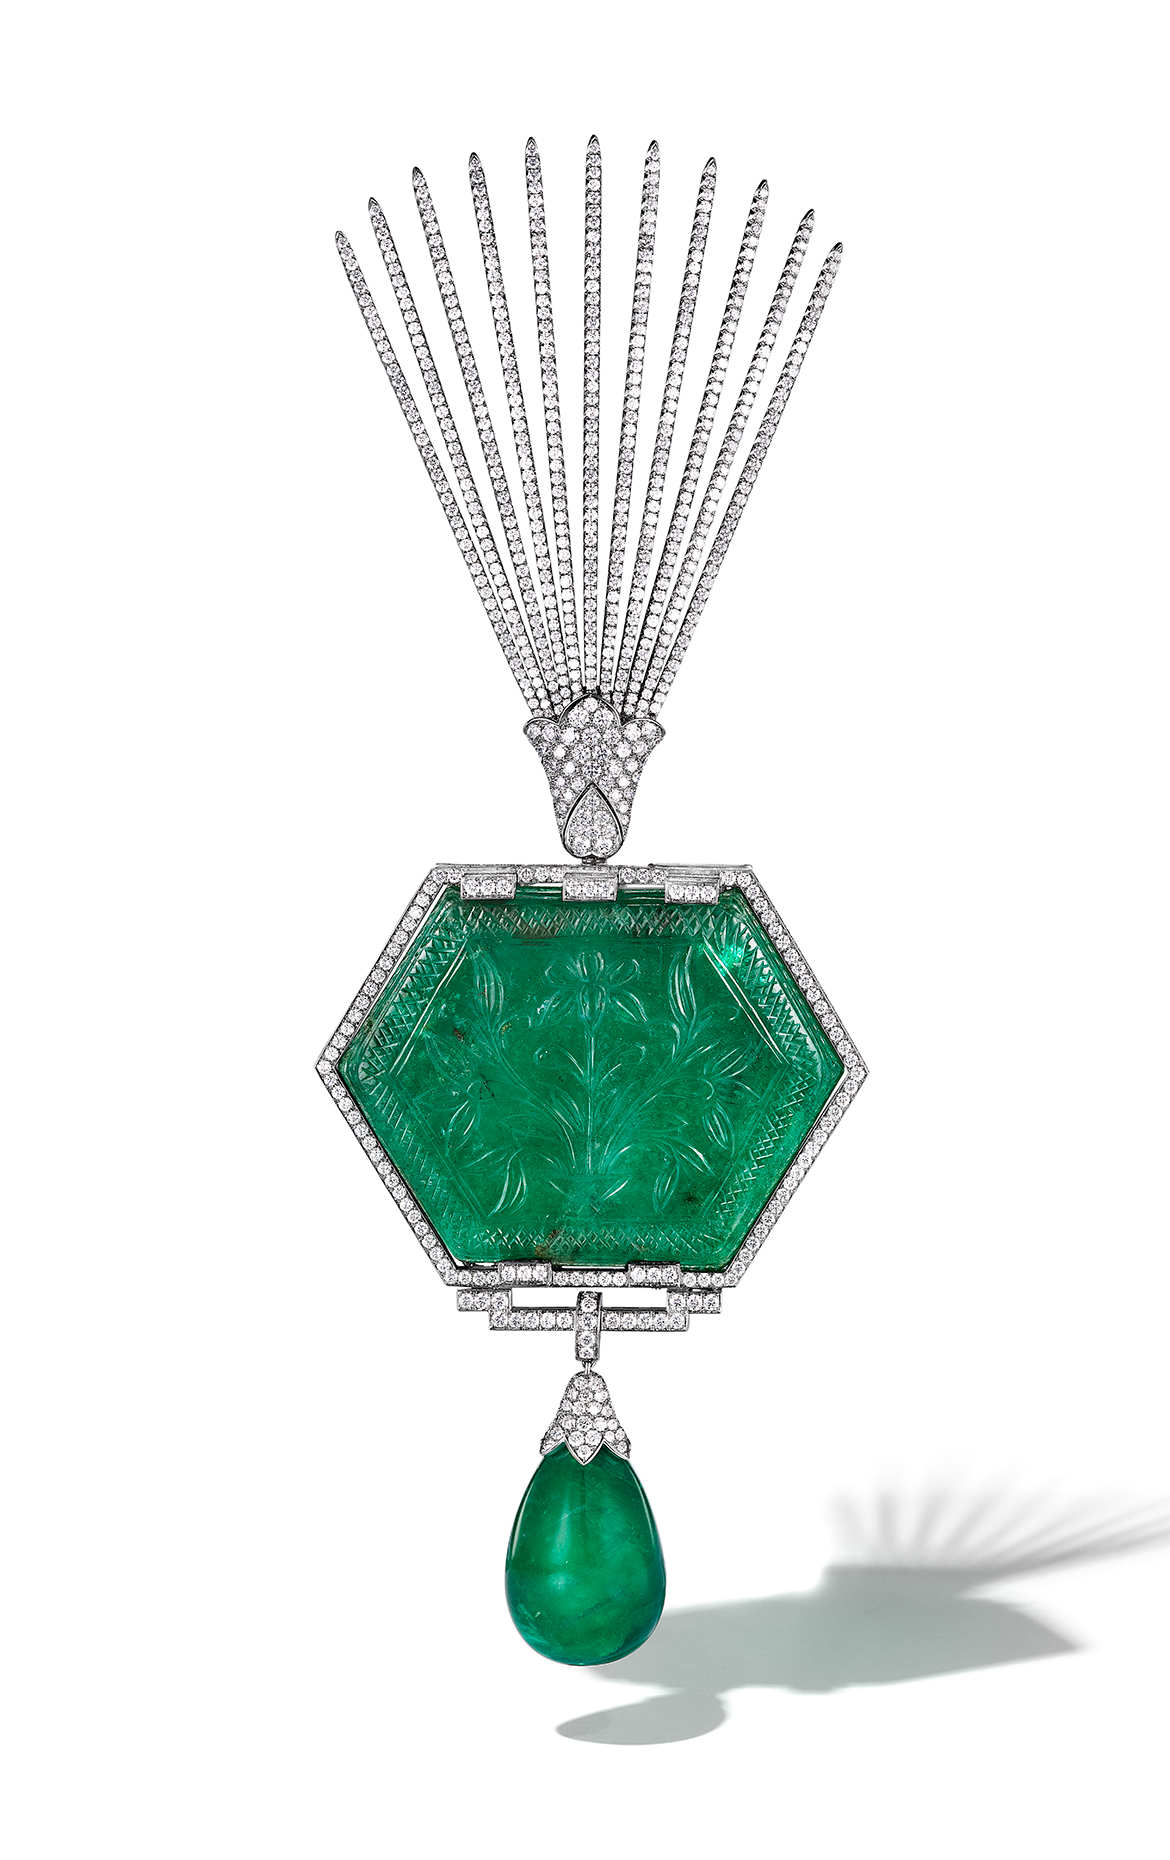 Moghul Cartier Emerald Brooch Fan